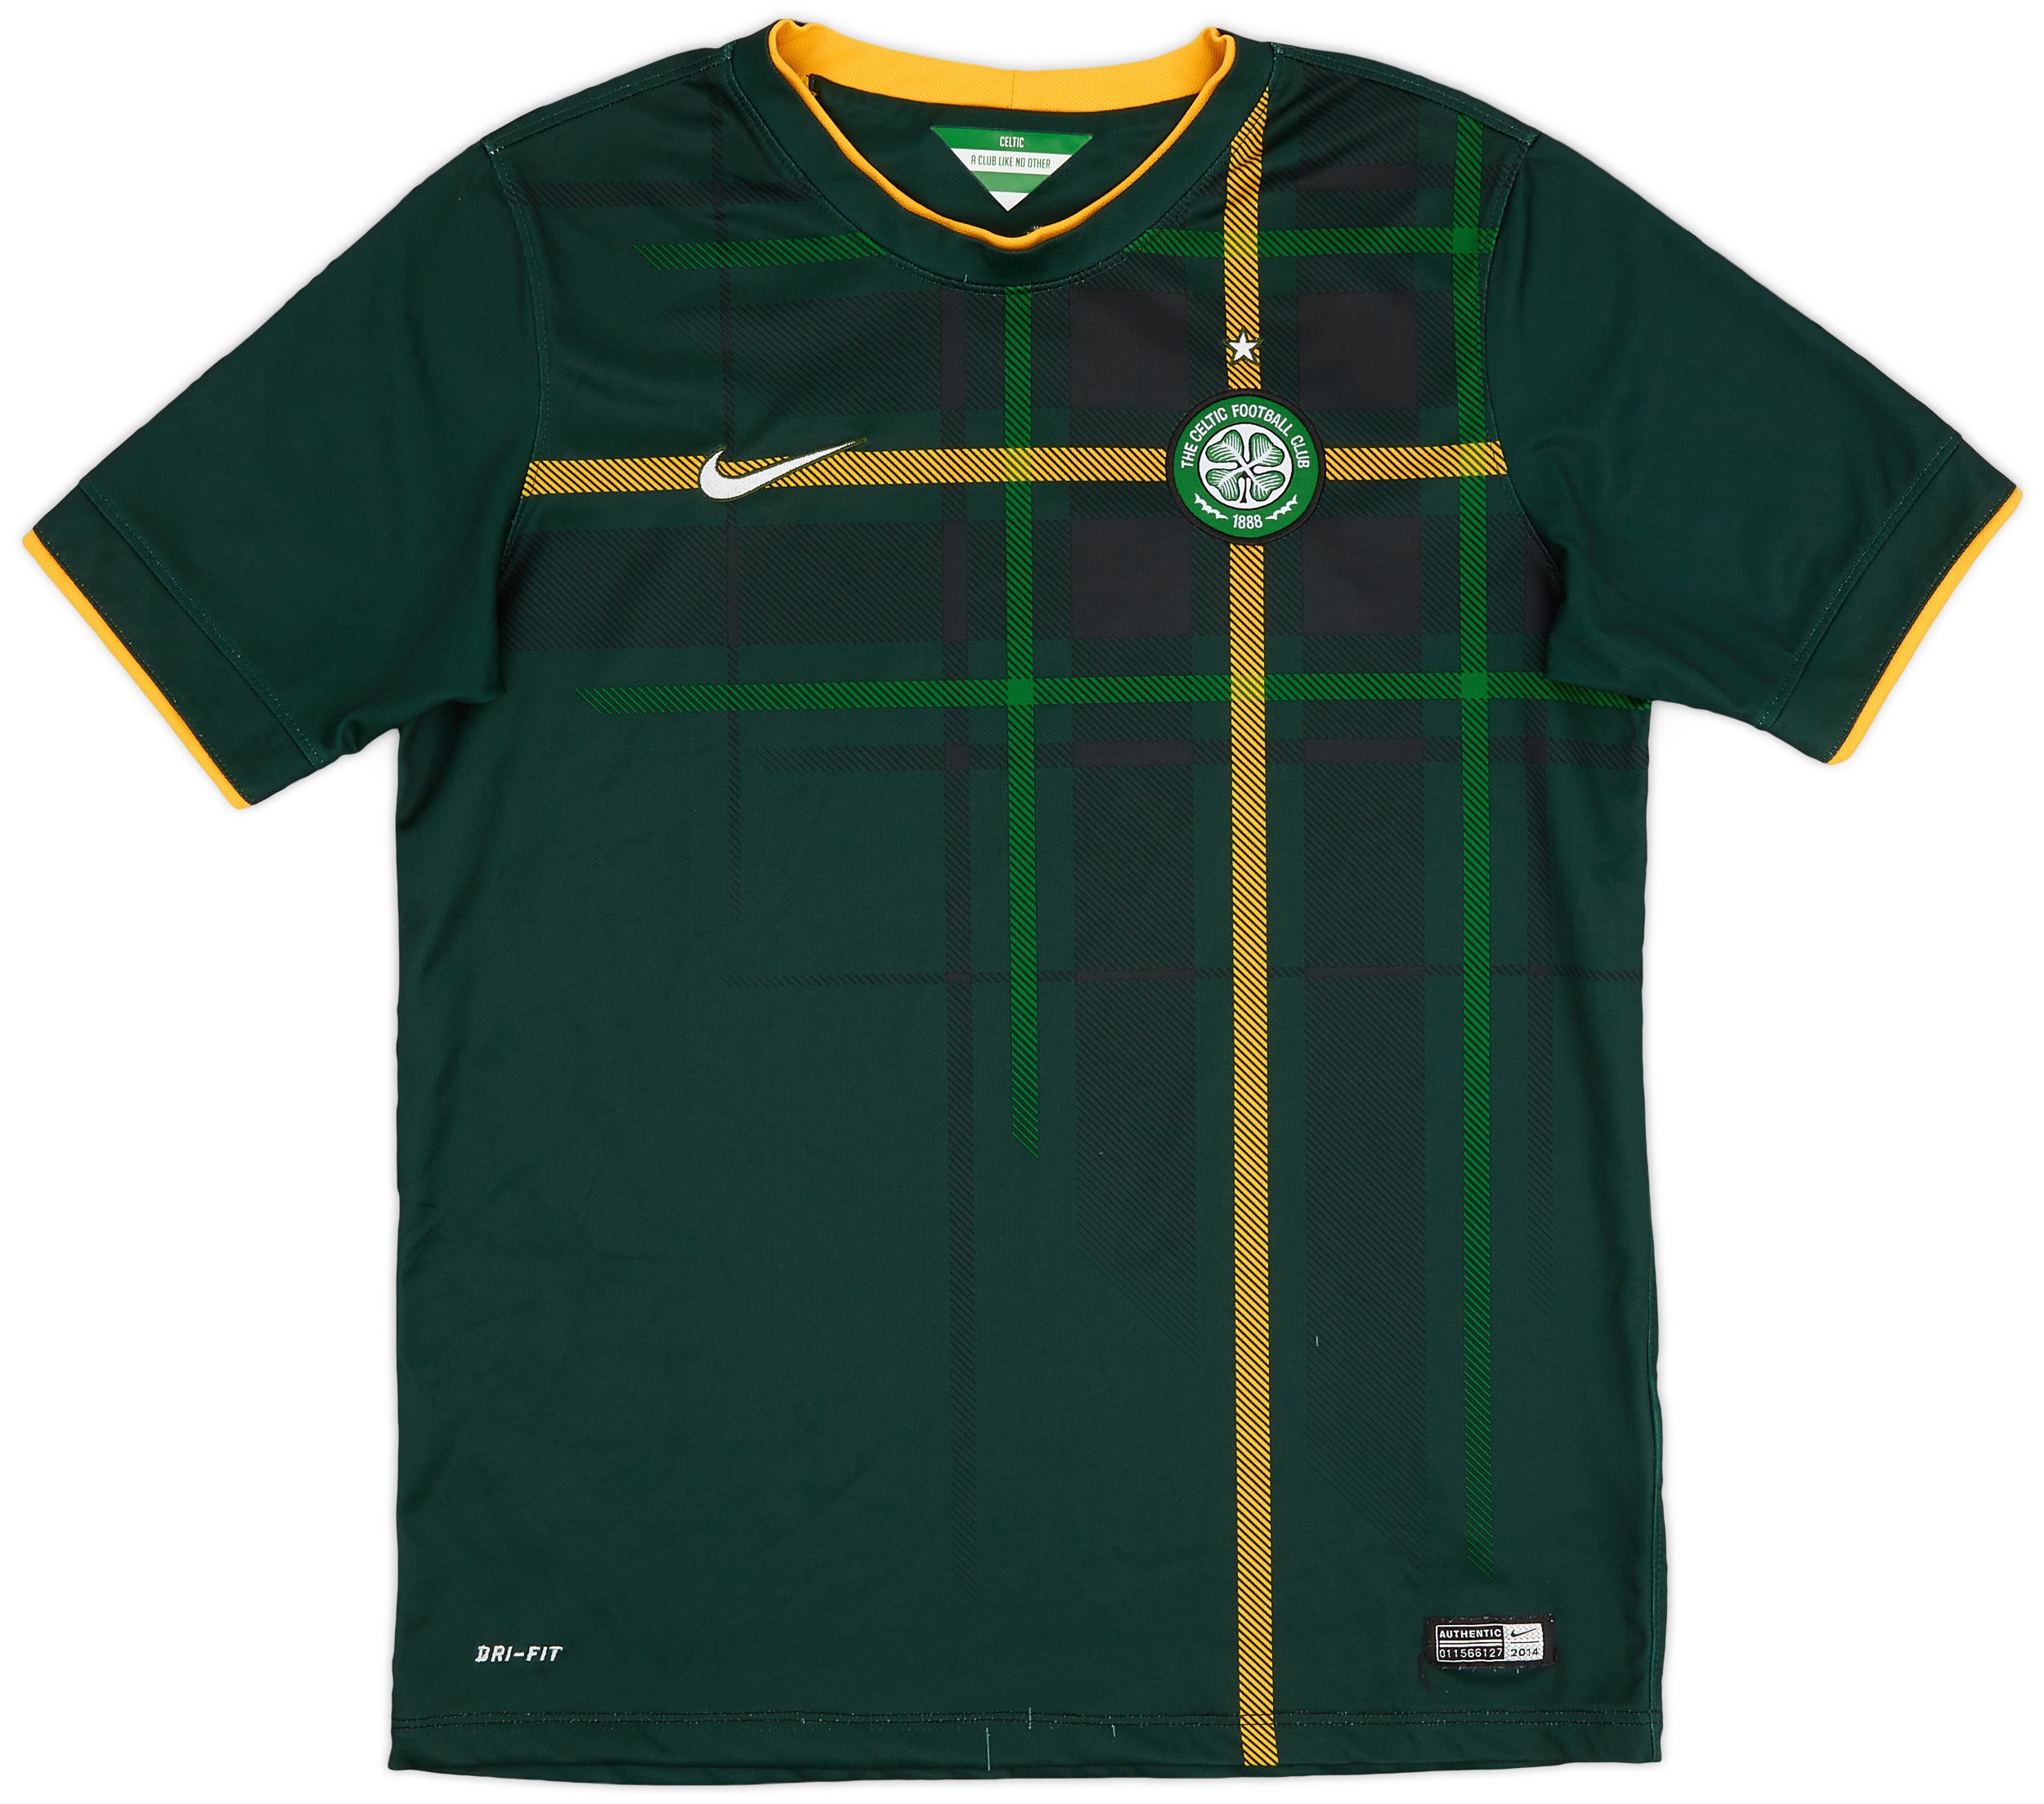 Celtic get tartan 2014/15 away kit from Nike 